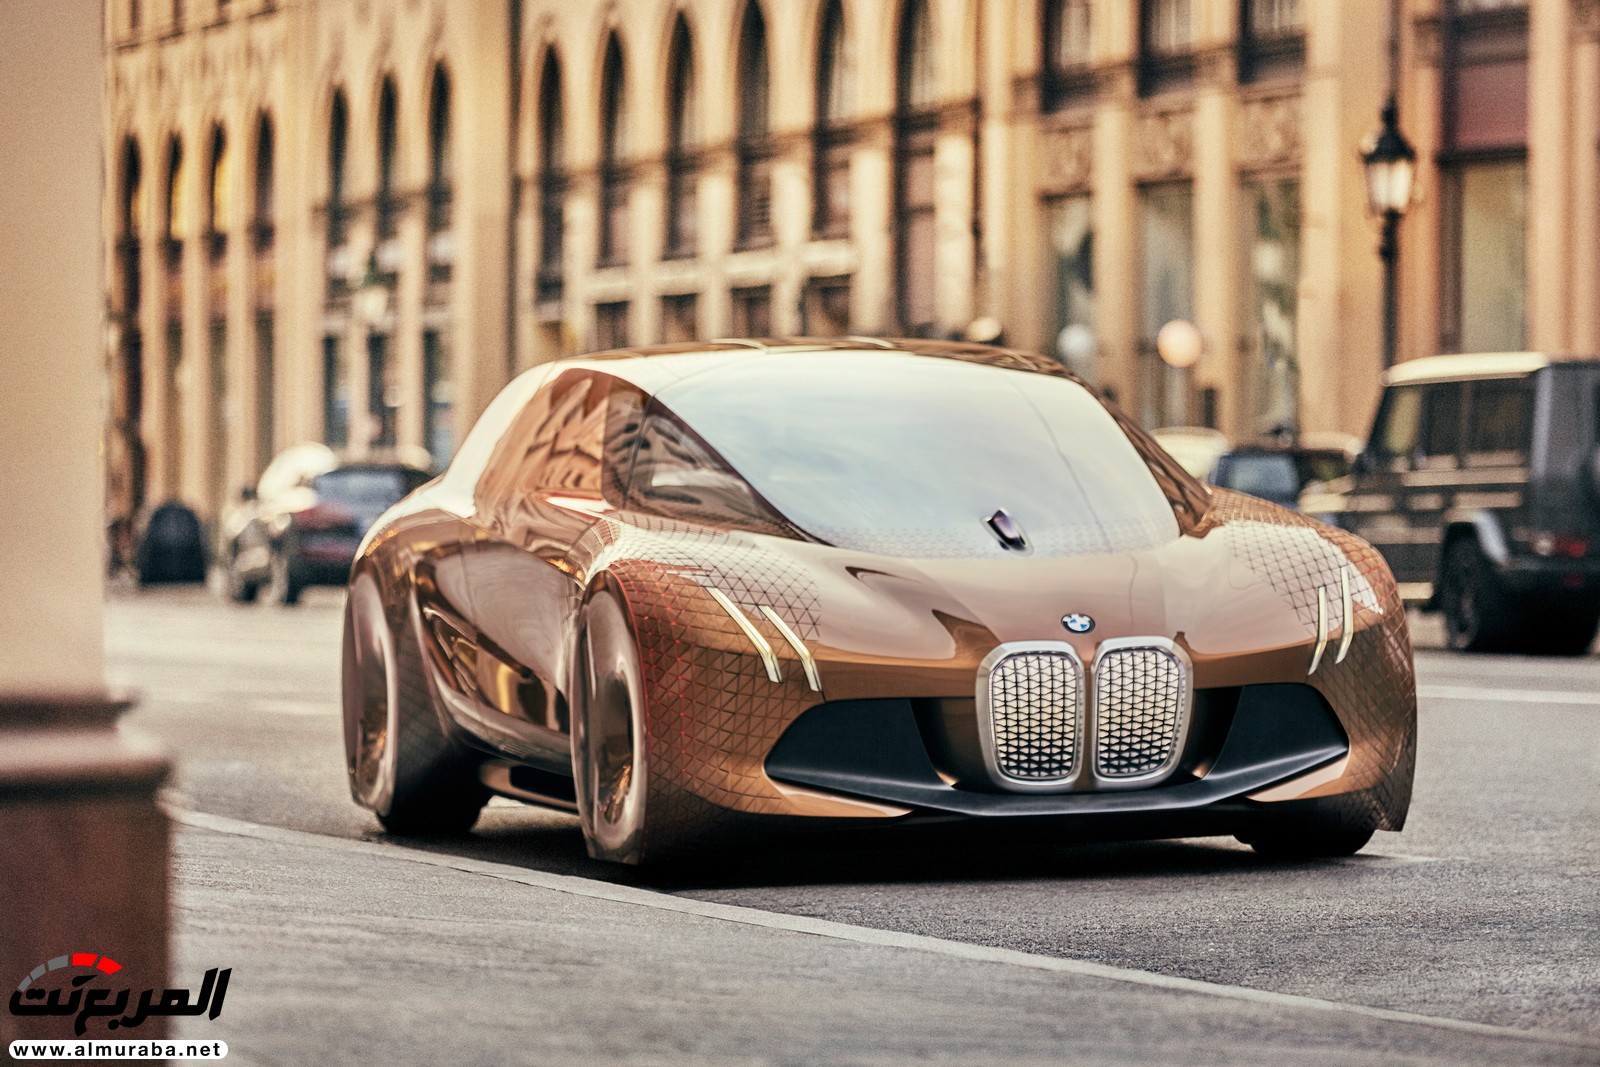 أكثر تقنيات القيادة الذاتية تقدما من "بي إم دبليو" ستتوفر بكافة موديلاتها بالمستقبل BMW 3